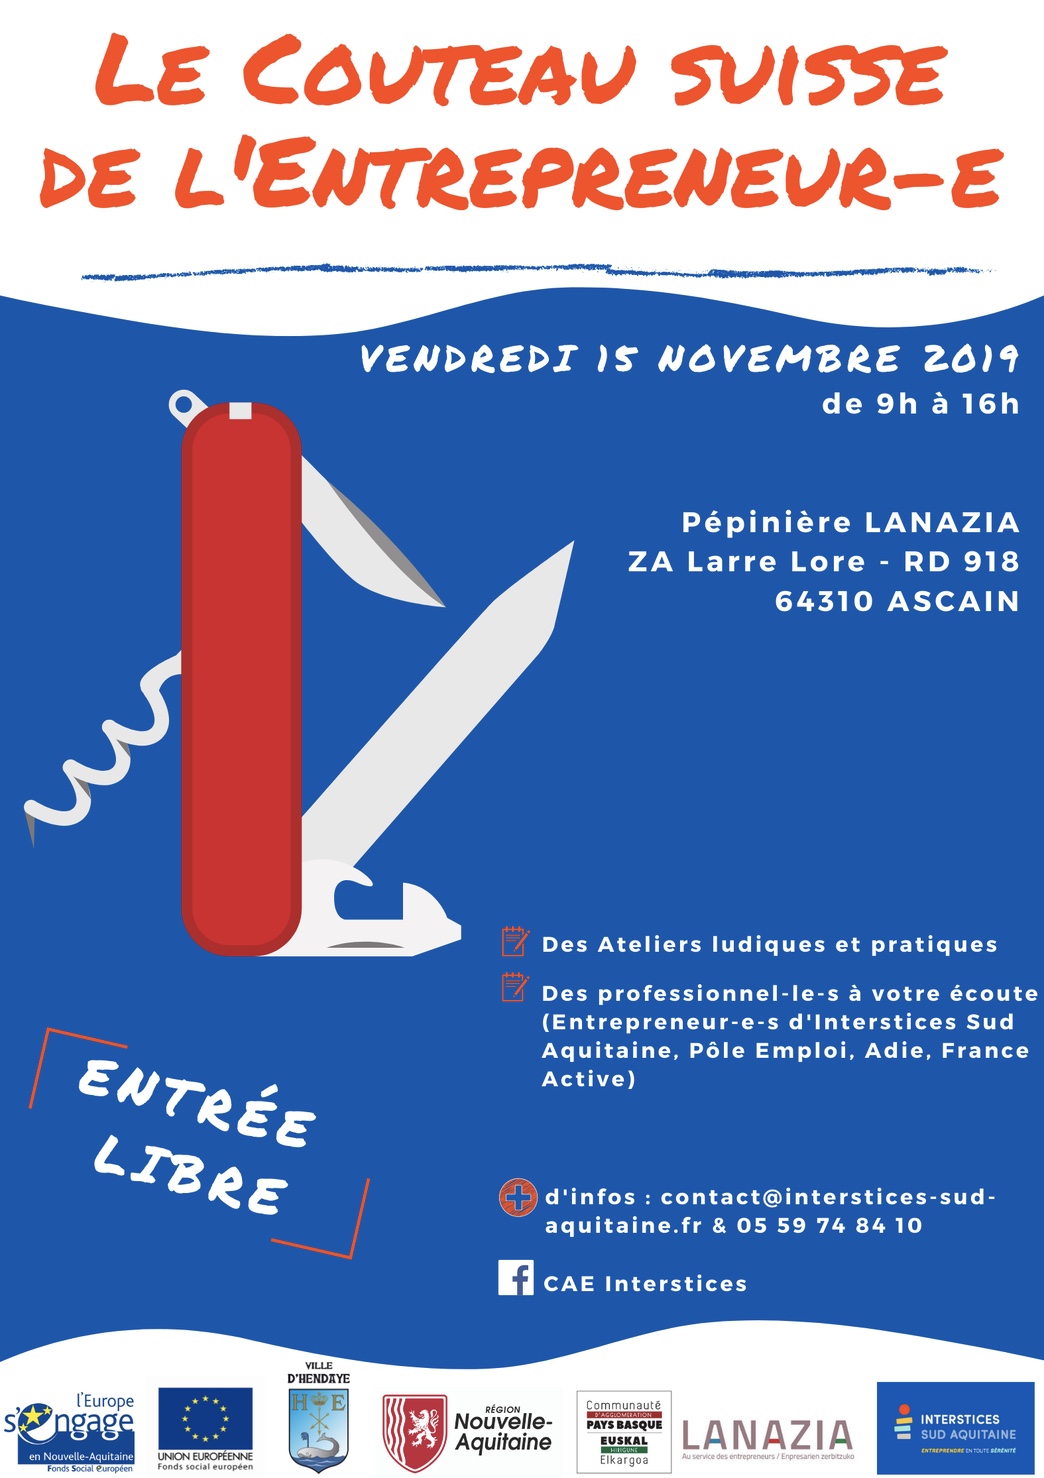 Couteau Suisse 2019 : affiche